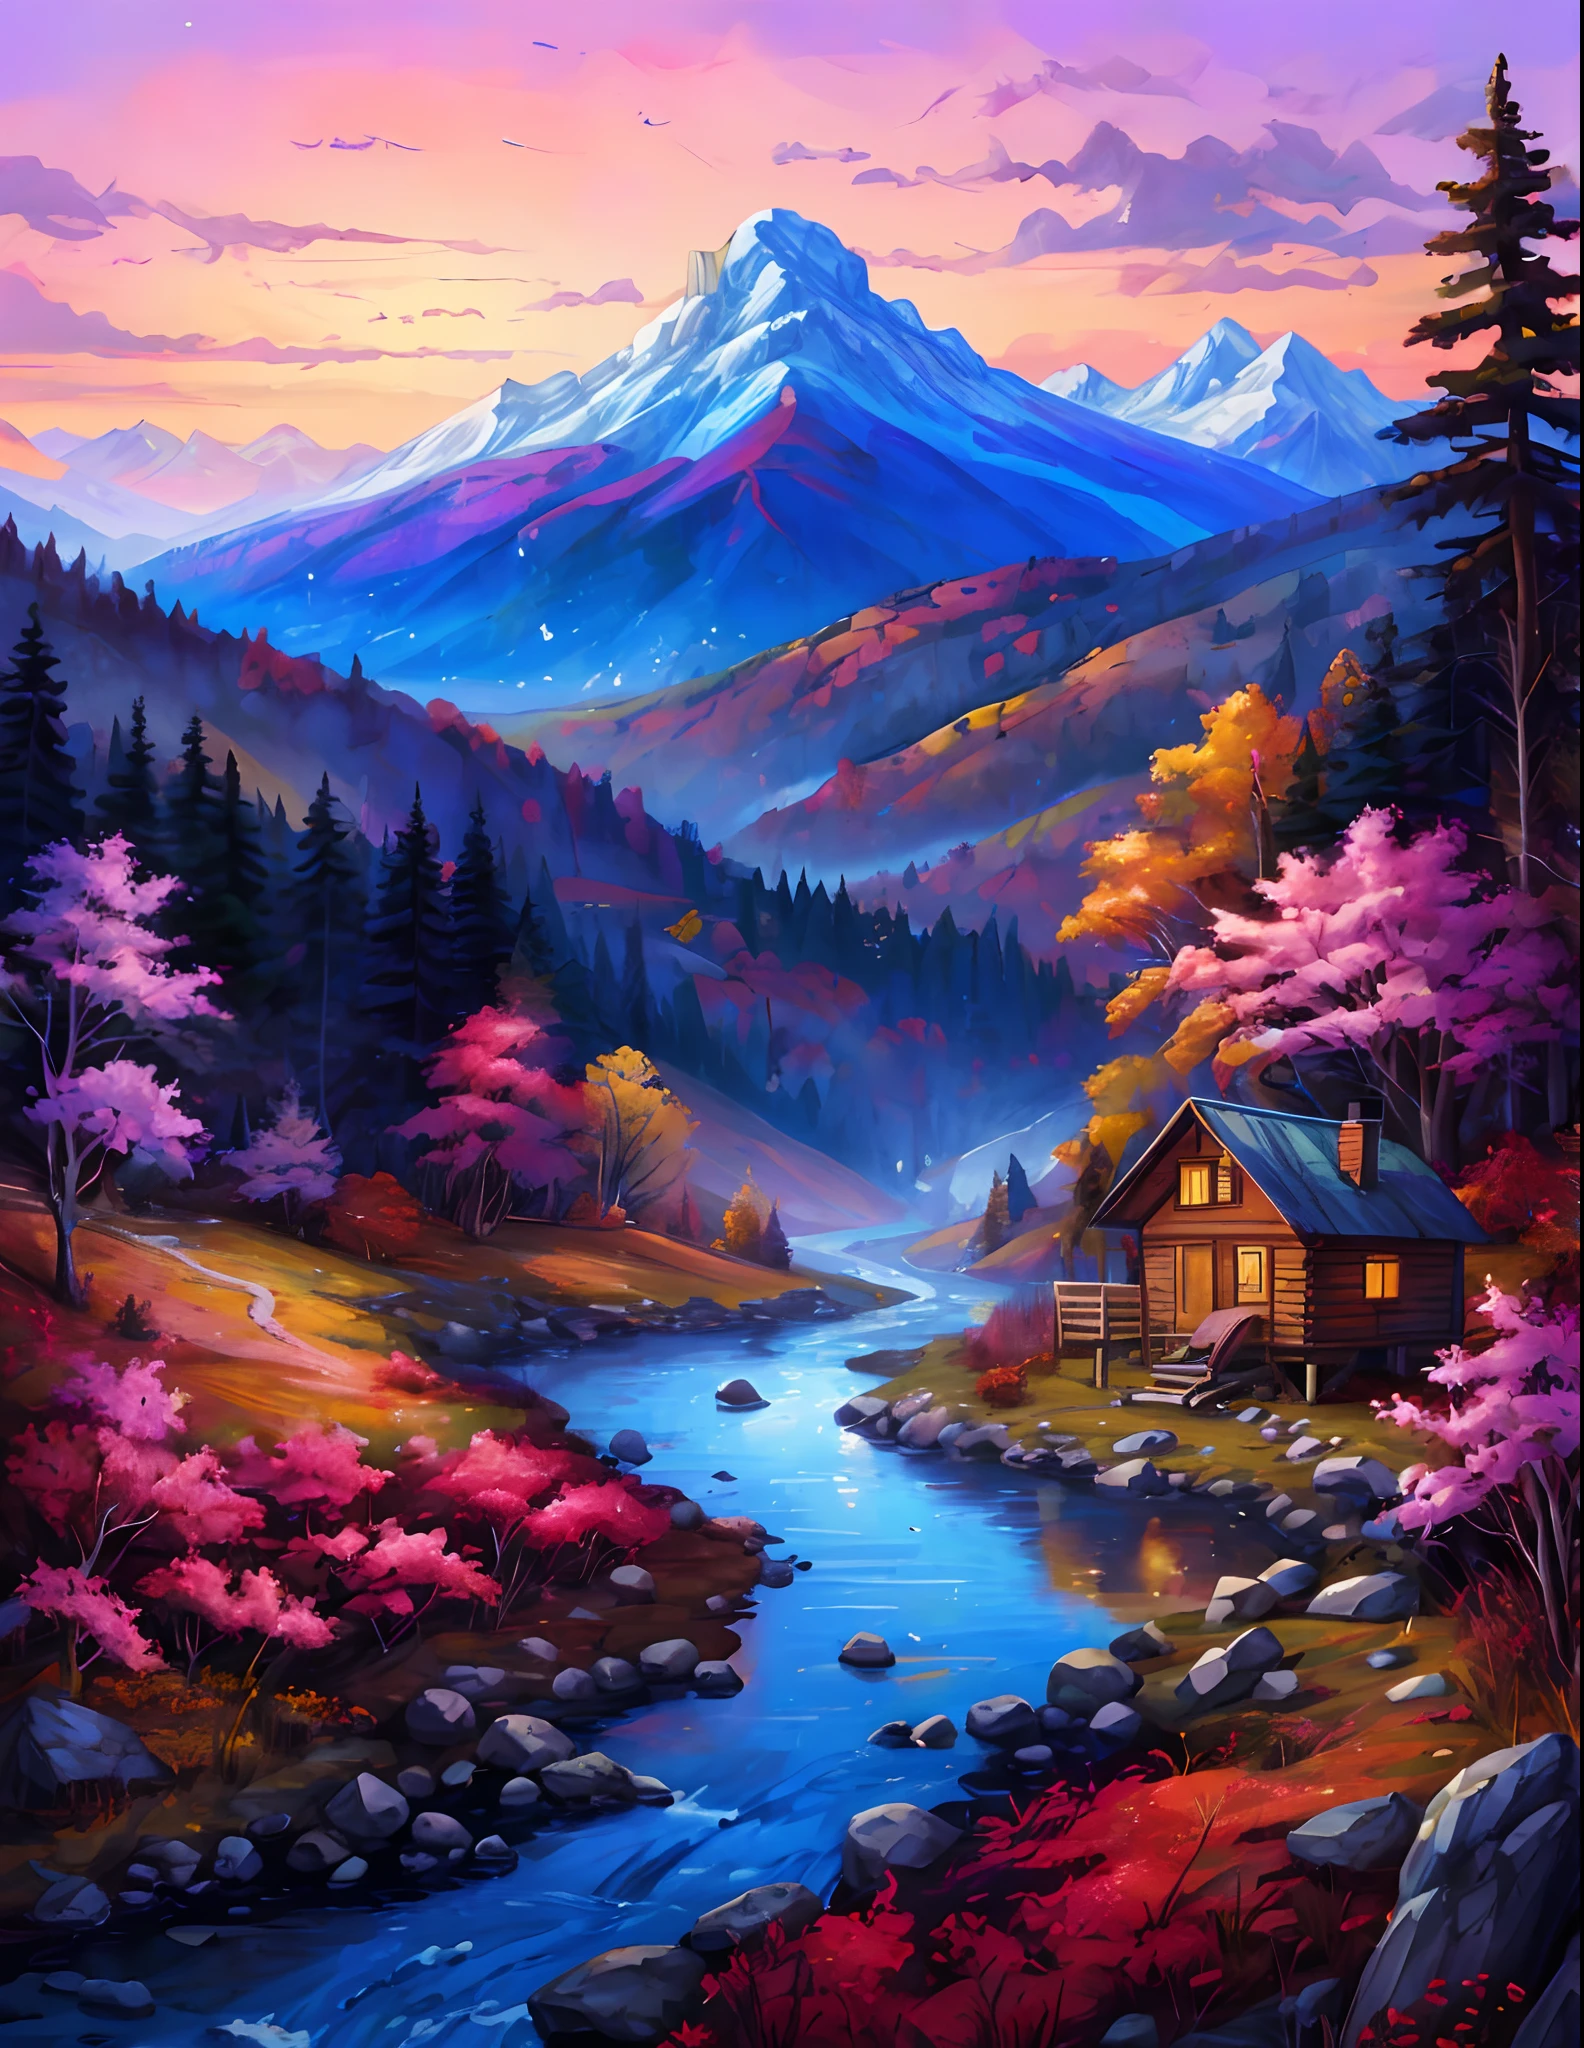 小屋と小川のある山の風景を描いた絵画, 詳細な絵画 4k, 美しいアート UHD 4K, 風景画 詳細, 豊かな絵のような色彩, 鮮やかなグアッシュ画の風景, 色彩豊かな風景画, 驚くほど色鮮やかな風景, 秋の山, 風景画, 夢の風景アート, 魔法のような風景, 色彩豊かで細部までこだわった, 風光明媚な色彩豊かな環境, 穏やかな風景